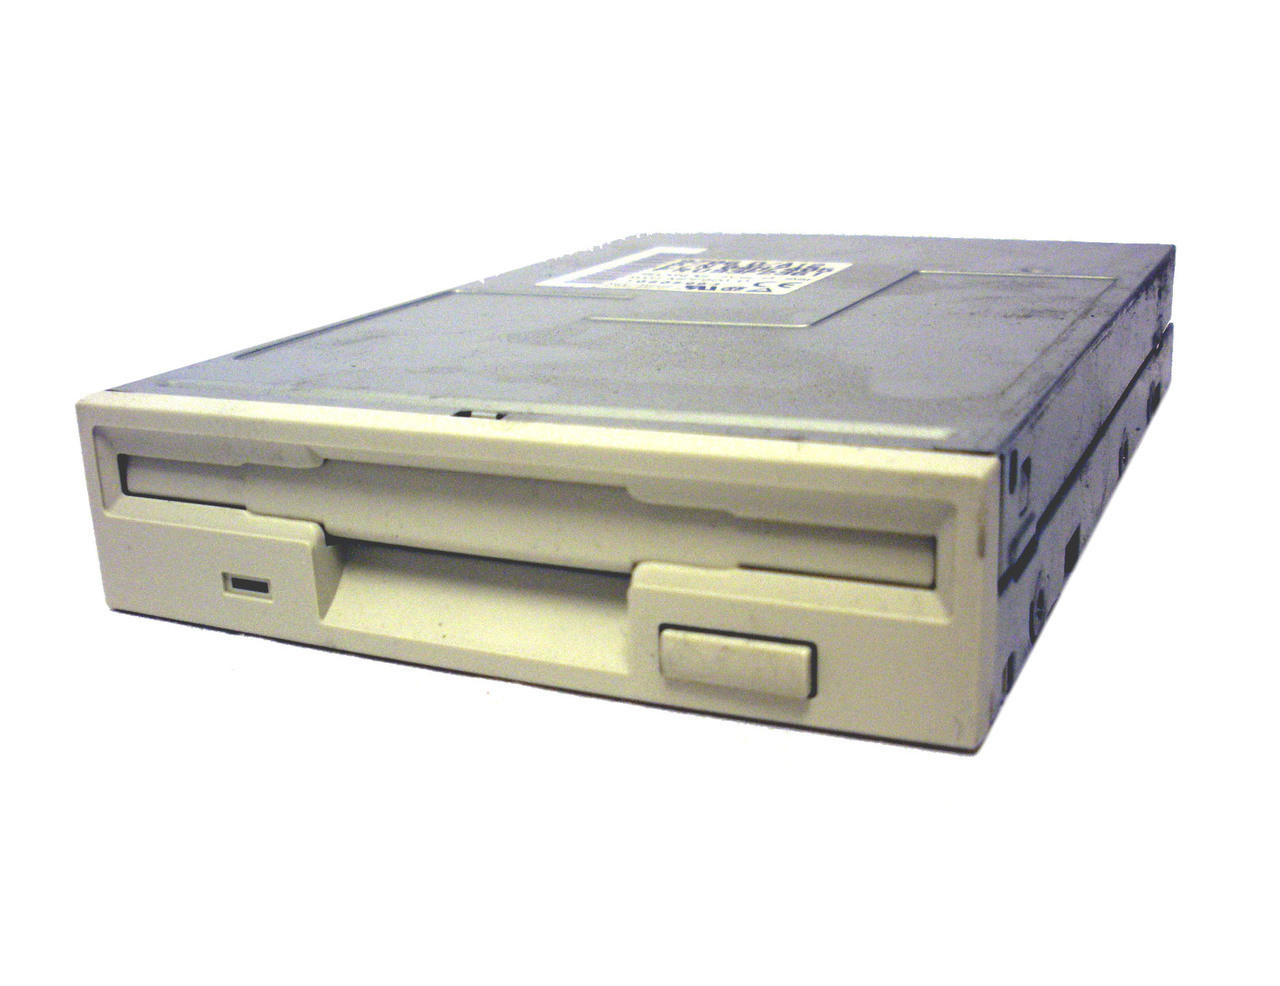 IBM Floppy Drives